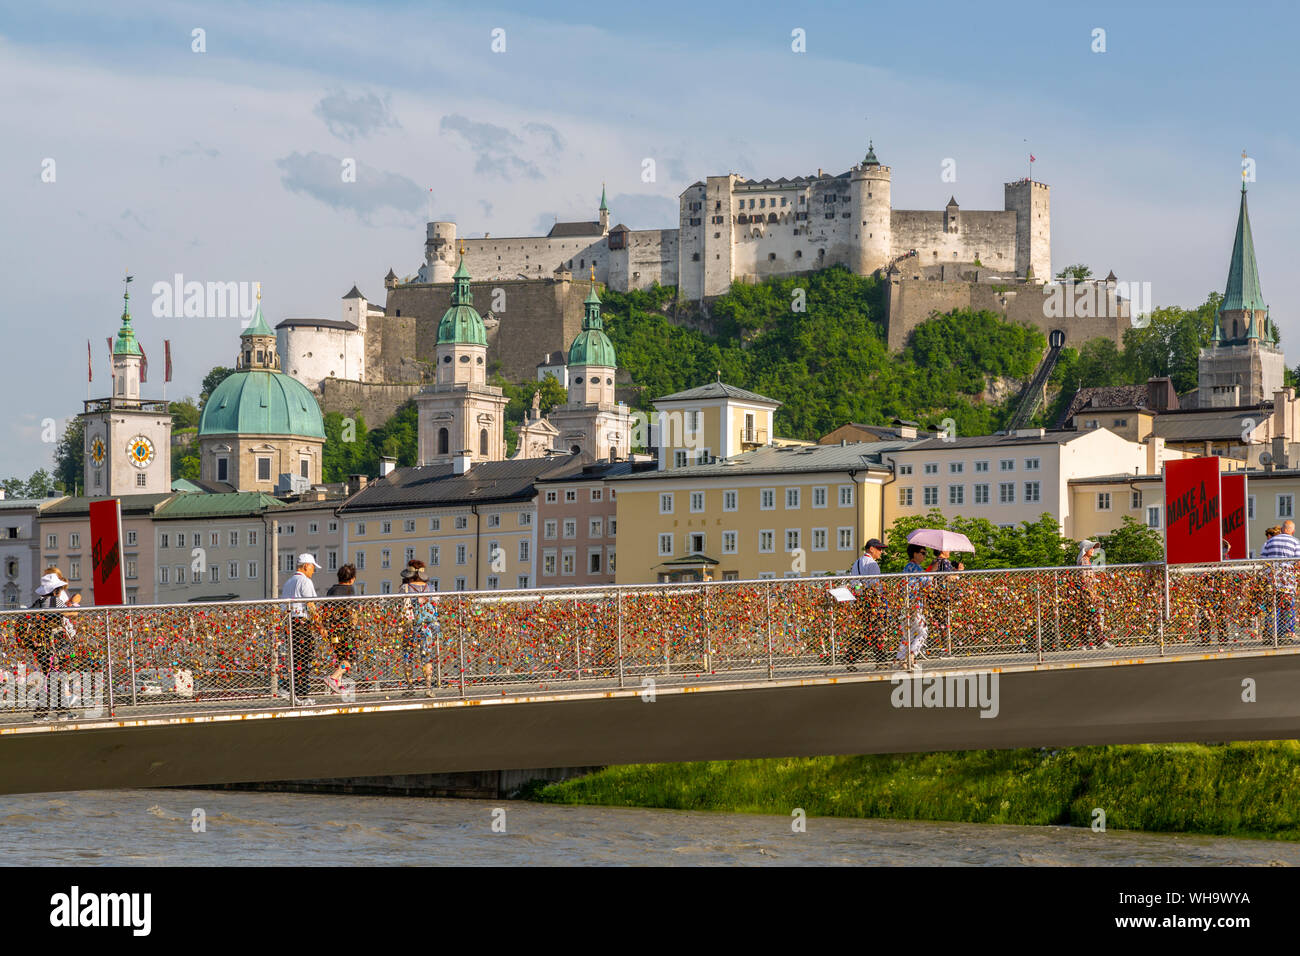 Blick auf die Festung Hohensalzburg und Fußgängerbrücke über die Salzach, Weltkulturerbe der UNESCO, Salzburg, Österreich, Europa Stockfoto